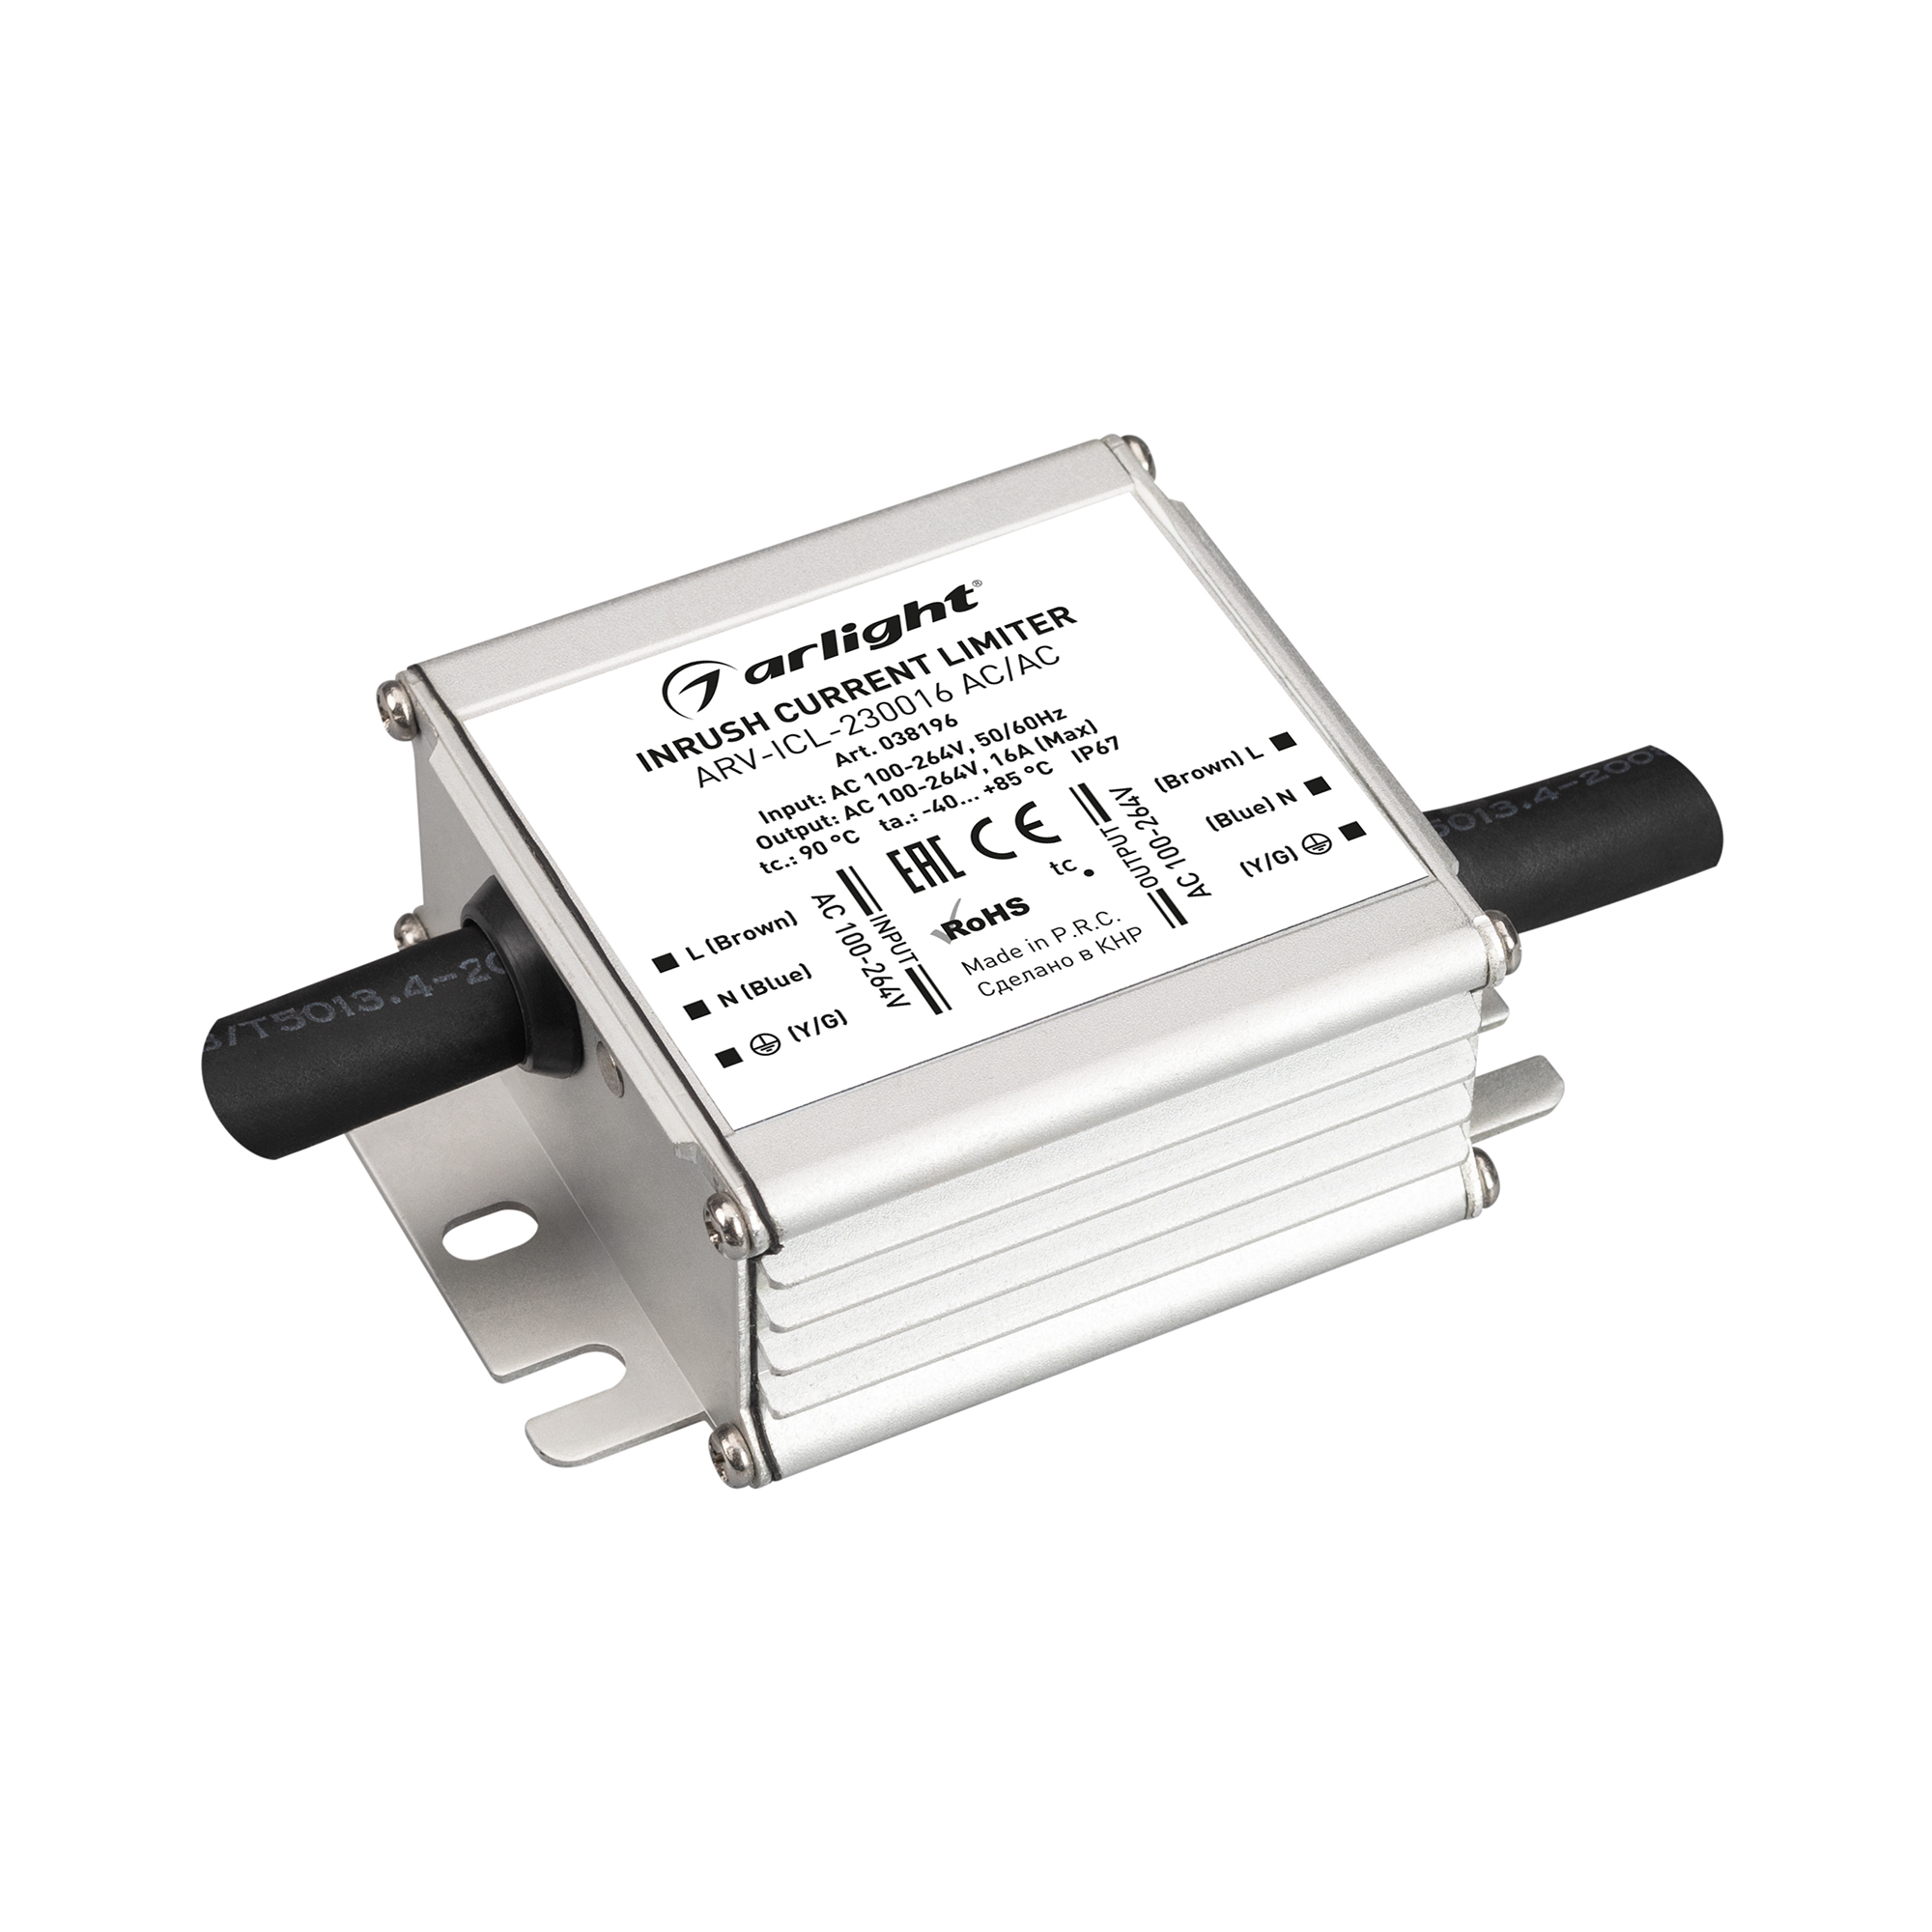 Блок питания ARV-ICL-230016 AC/AC (100-264V, 16A, Inrush current limiter) (Arlight, IP67 Металл, 5 лет) кейс для пускового устройства hummer